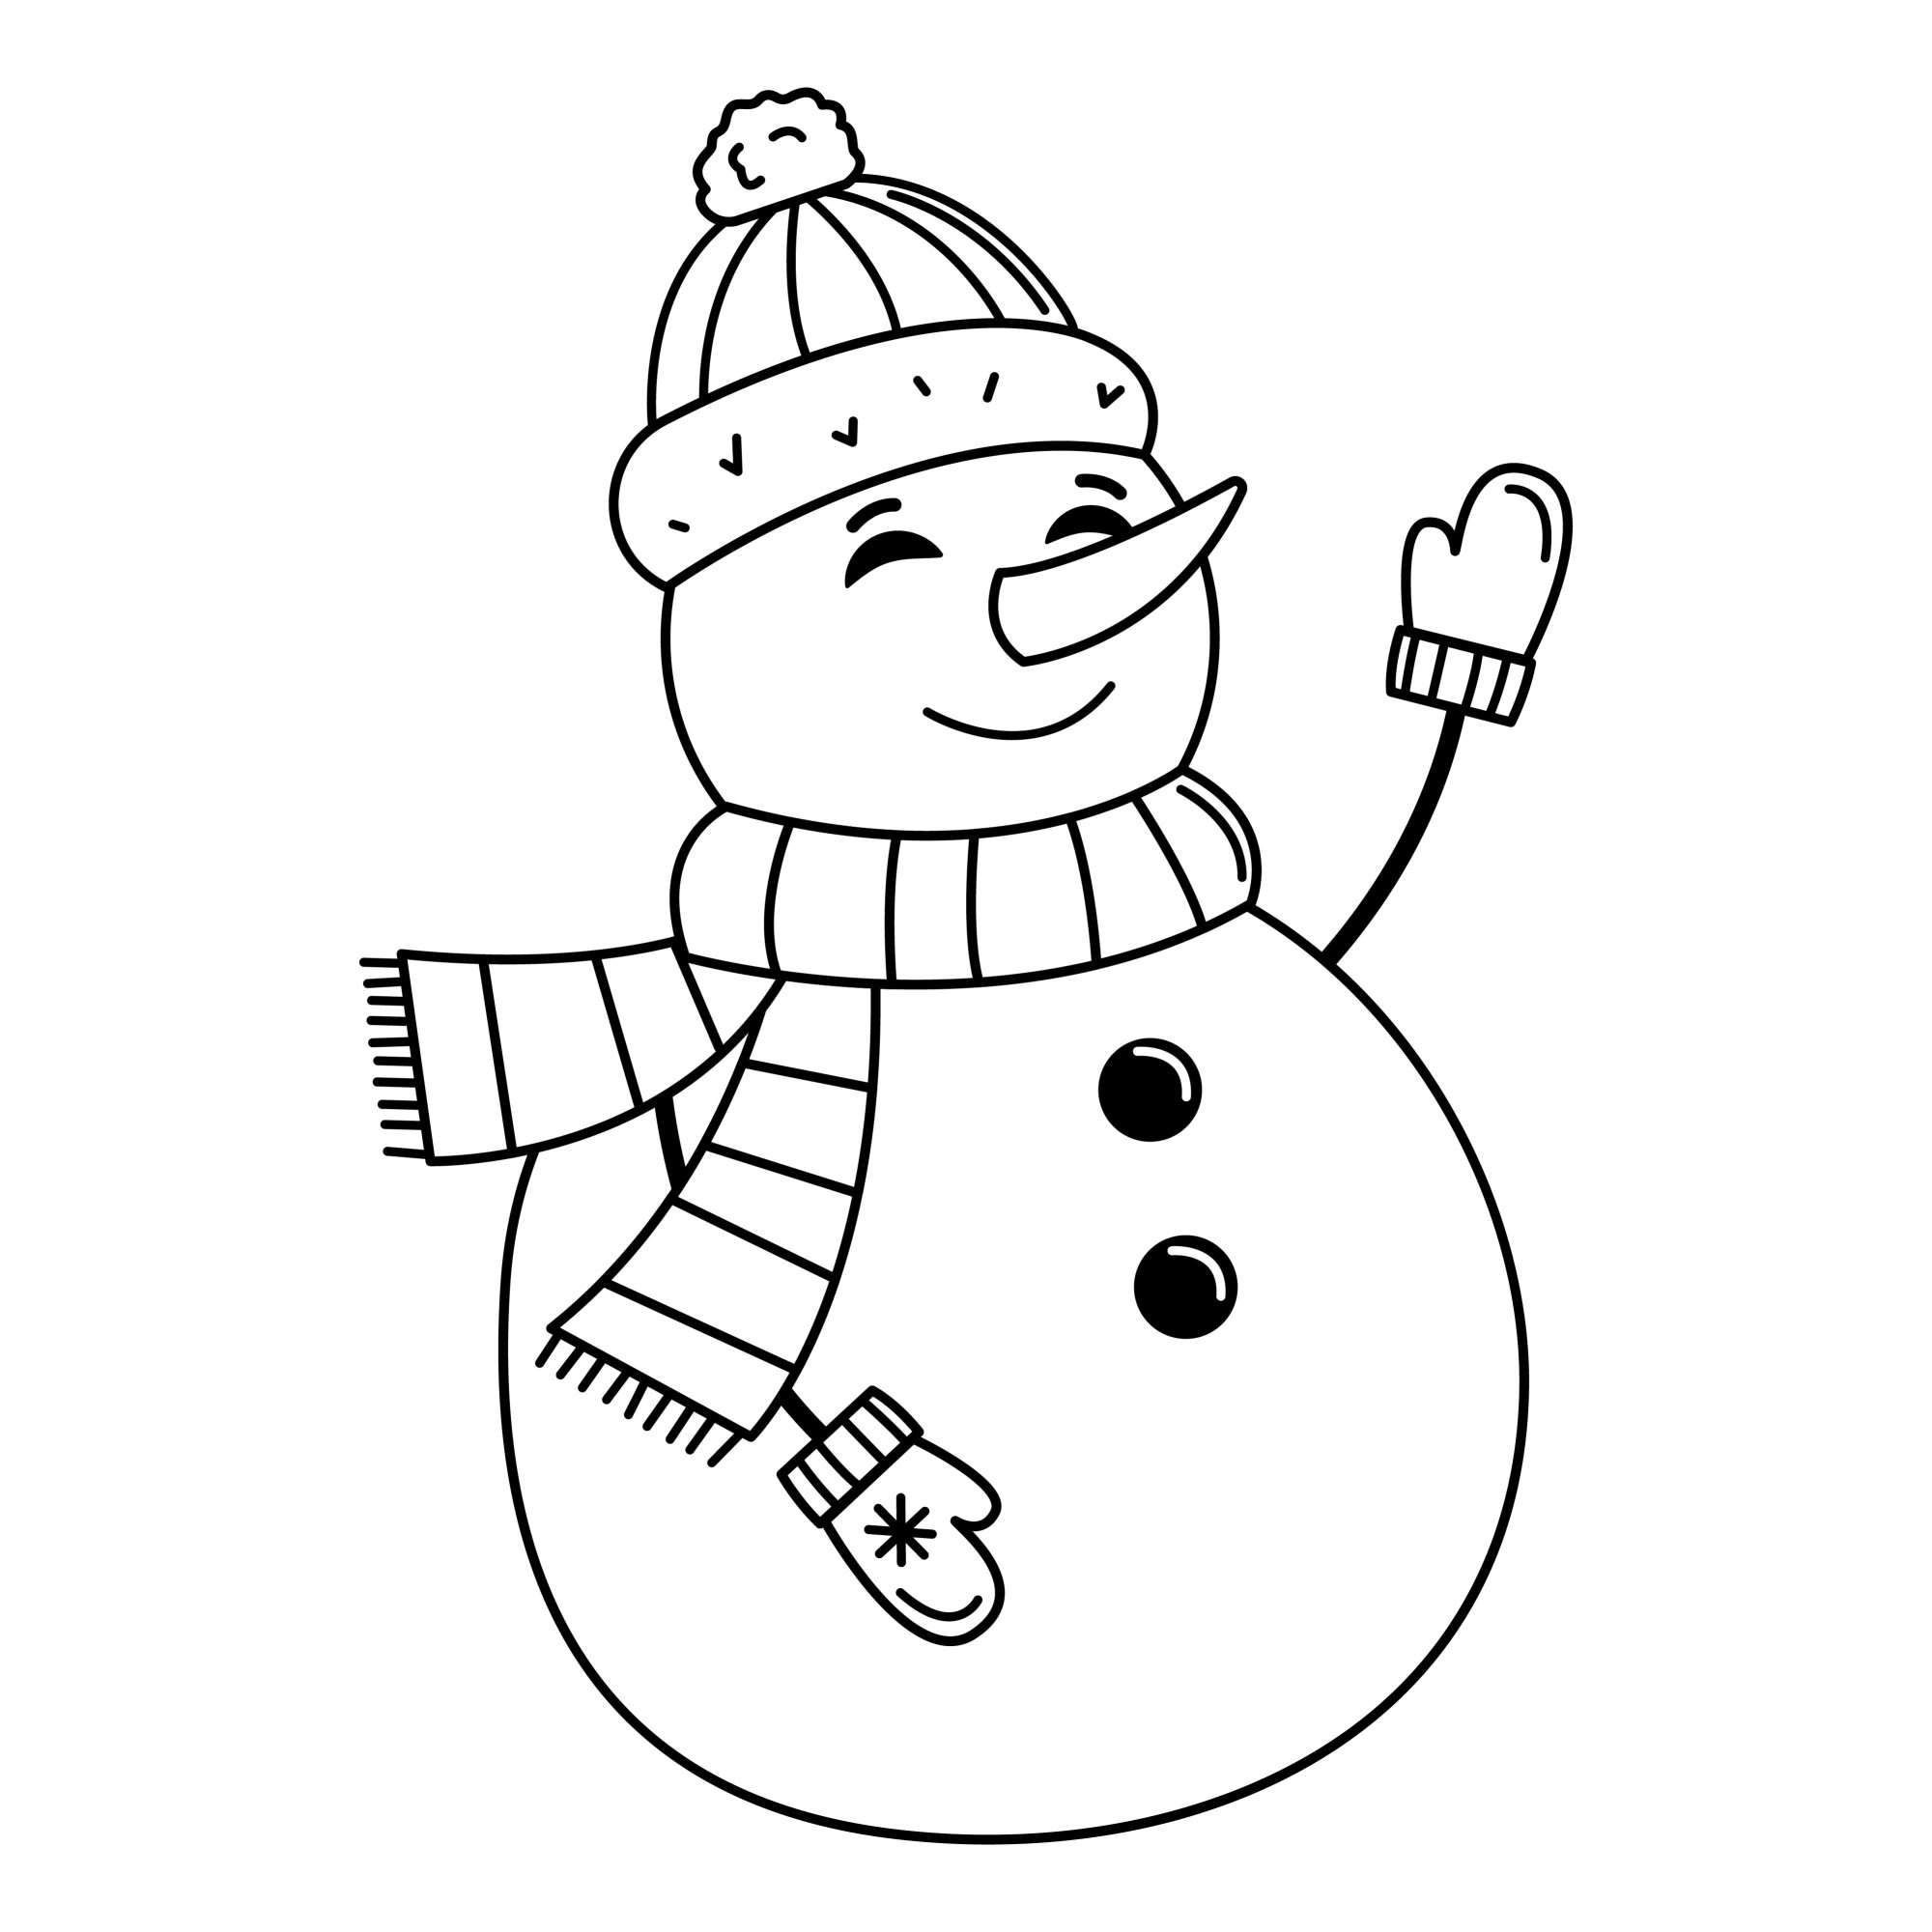 Раскраска для детей: добрый снеговик в шапке и шарфе машет рукой